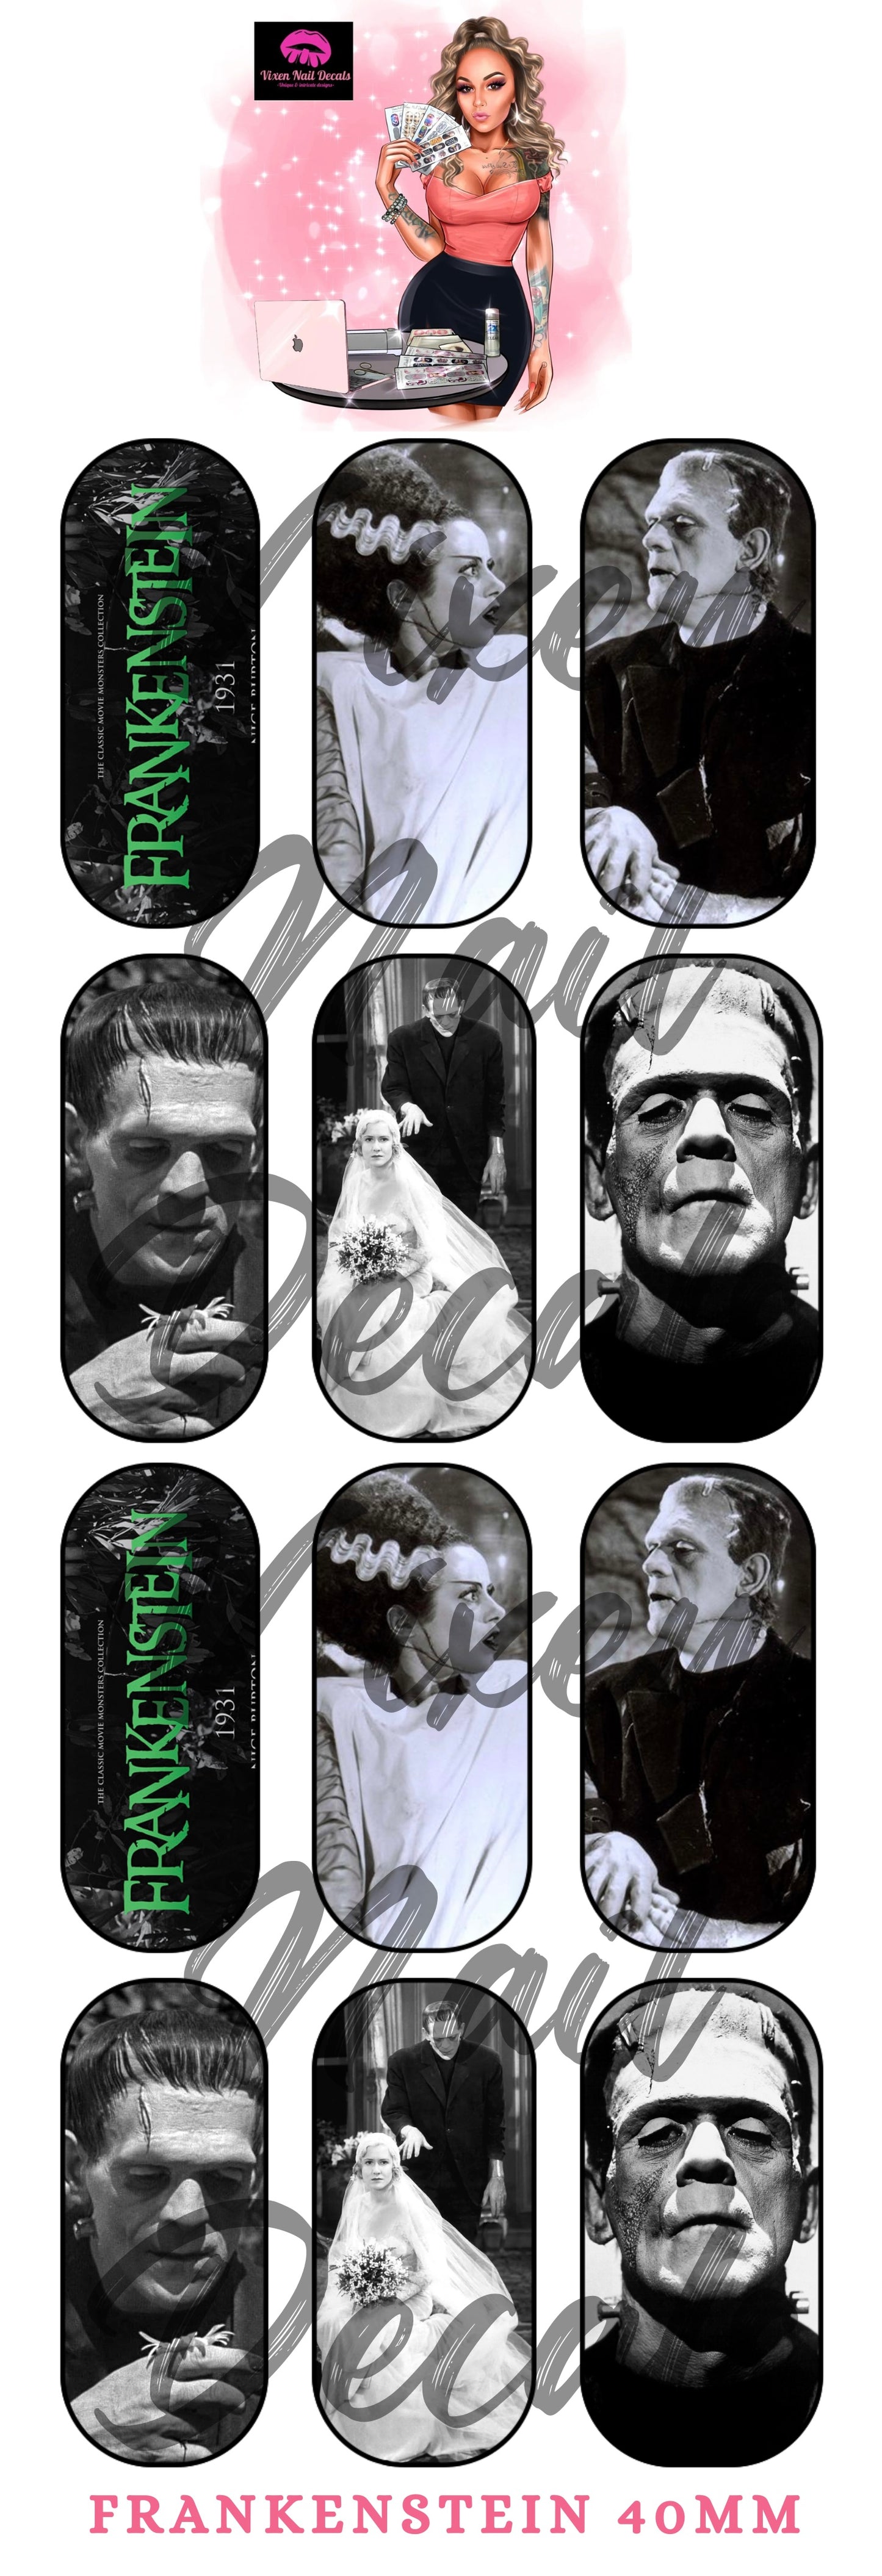 Frankenstein- Bride Of Frankenstein Waterslide Nail Decals - Nail Wraps - Nail Designs - Nail Art